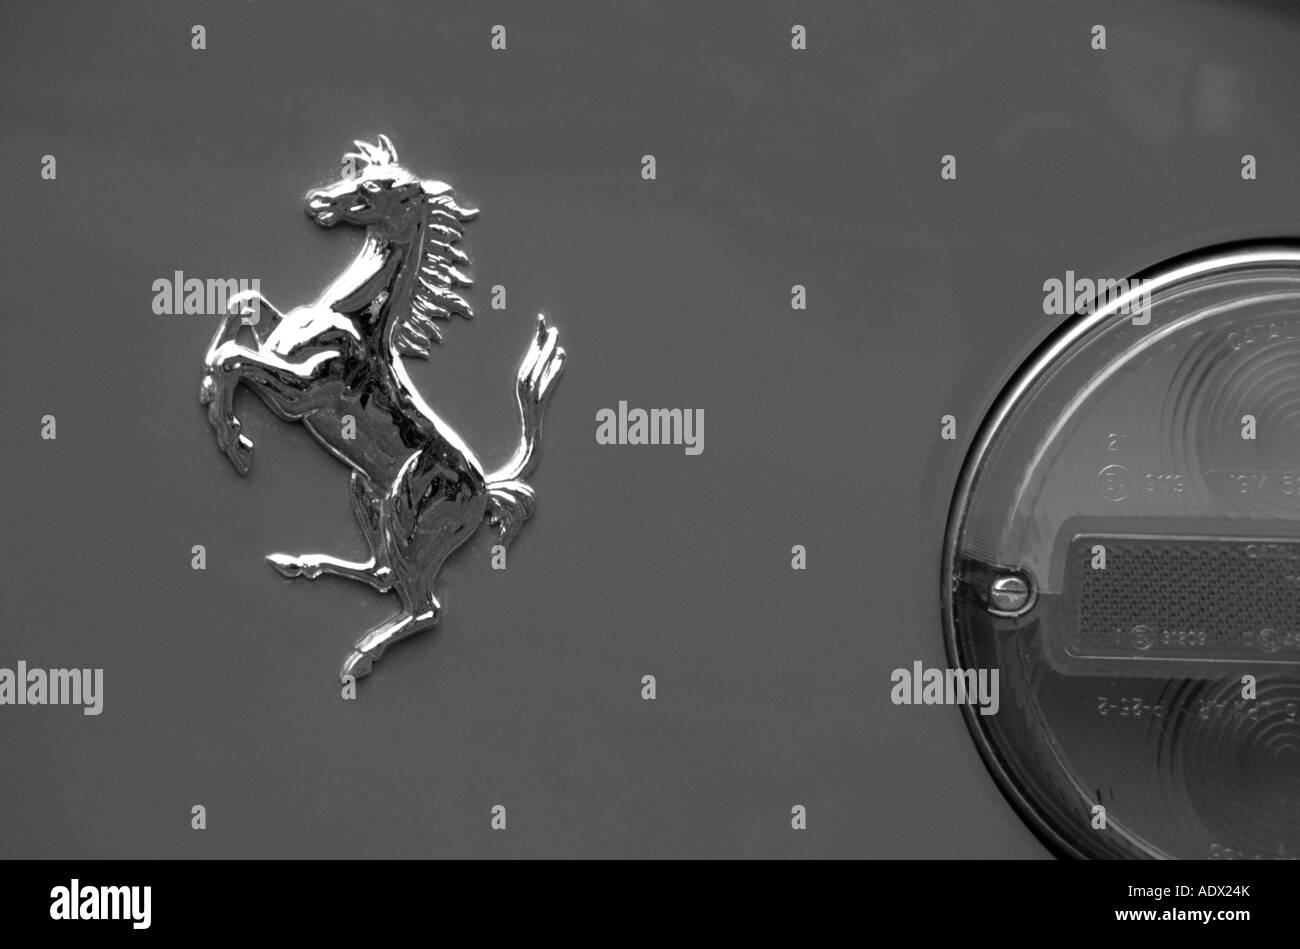 Cavallino Rampante, symbol of Ferrari – Stock Editorial Photo © WHPics  #68194989